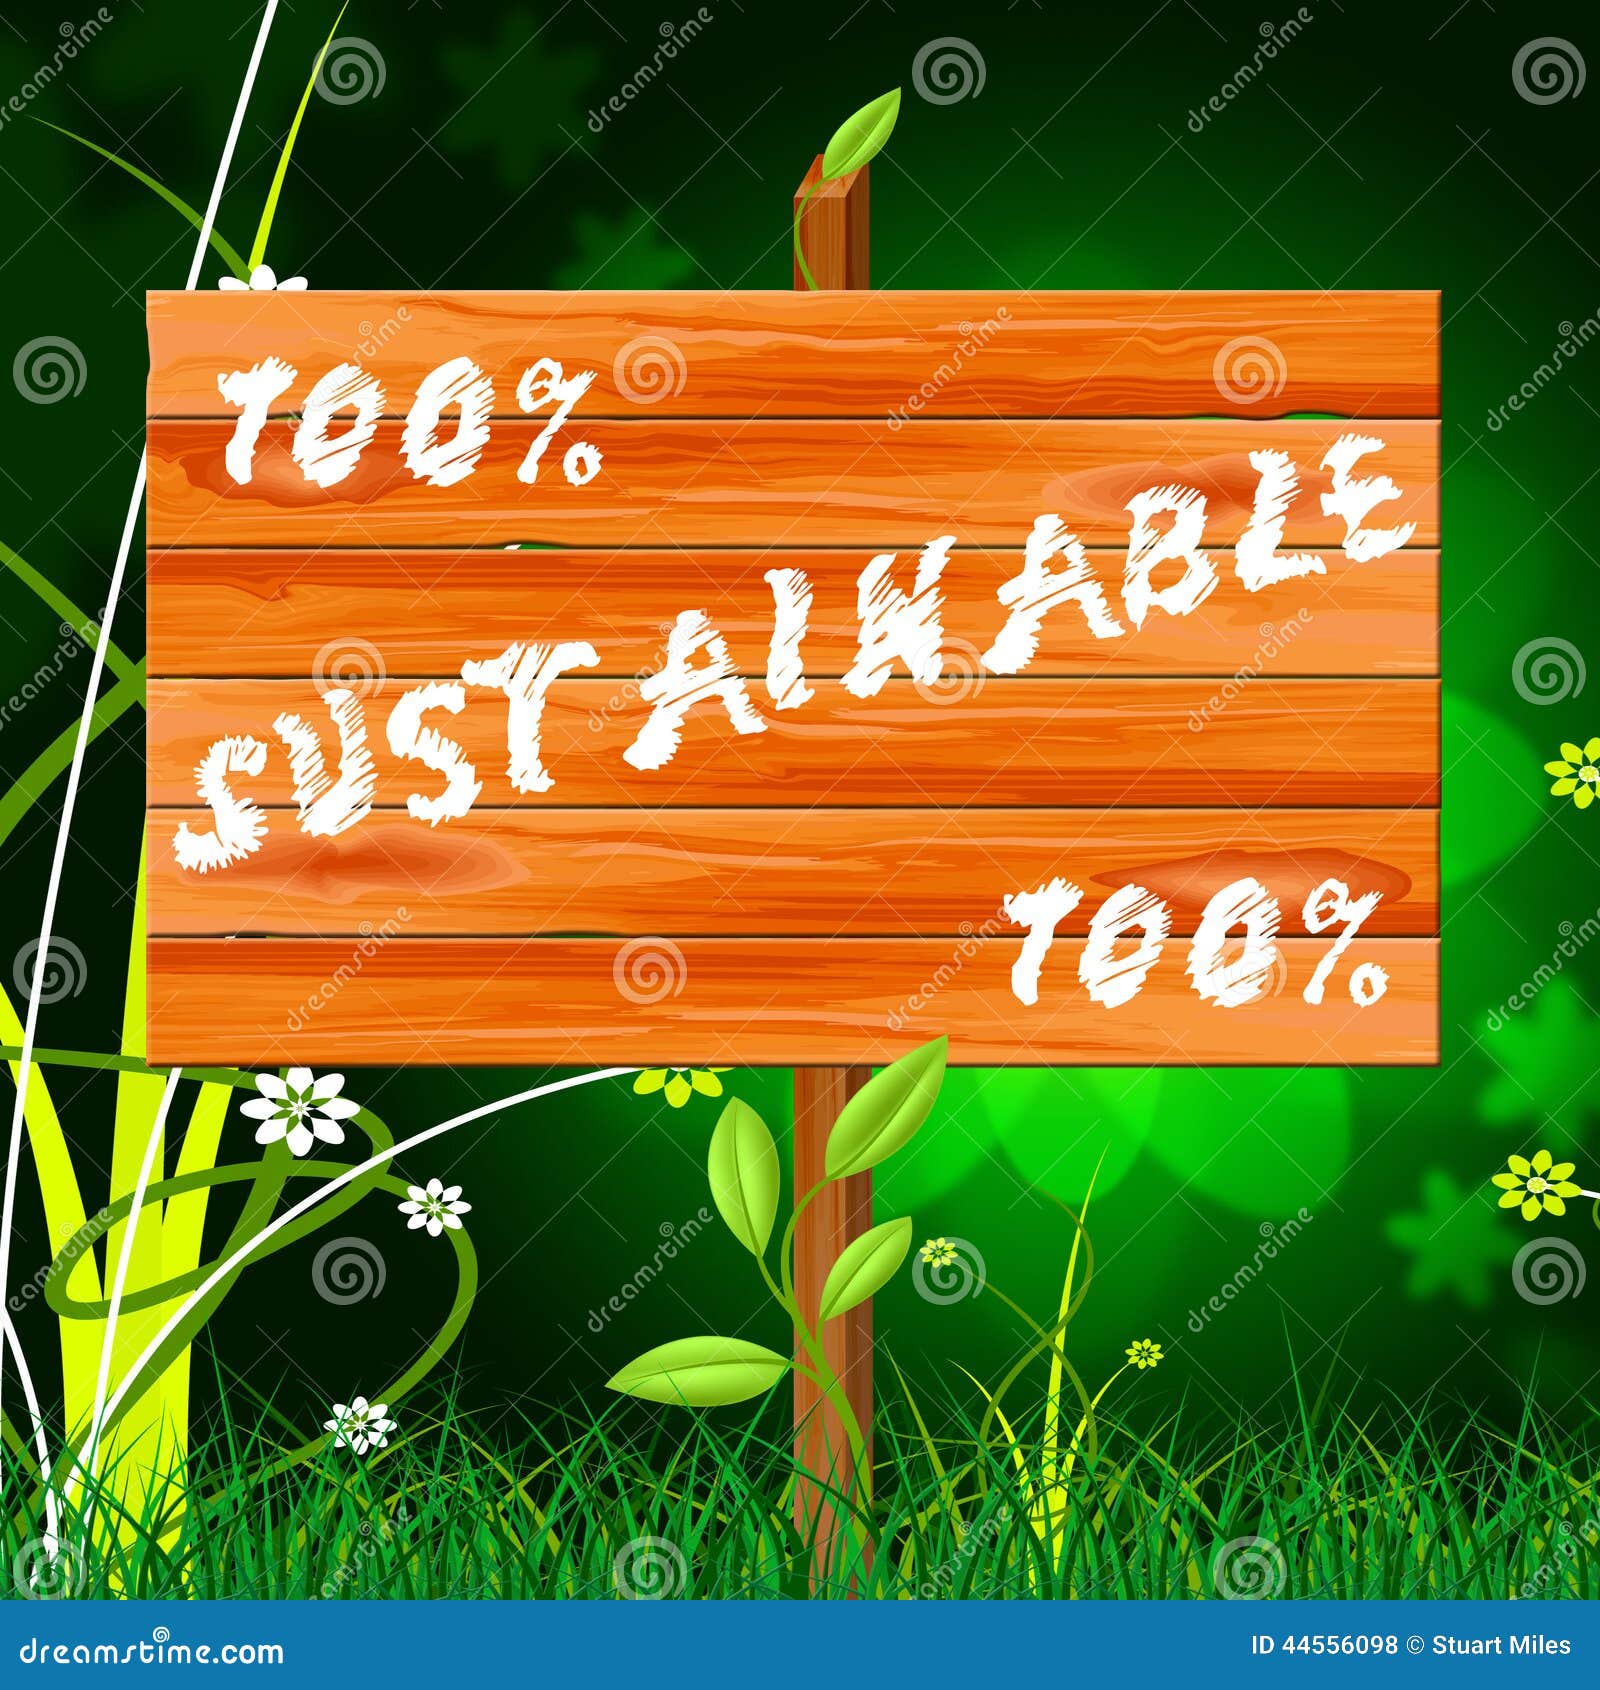 one hundred percent indicates sustainable sustaining and eco